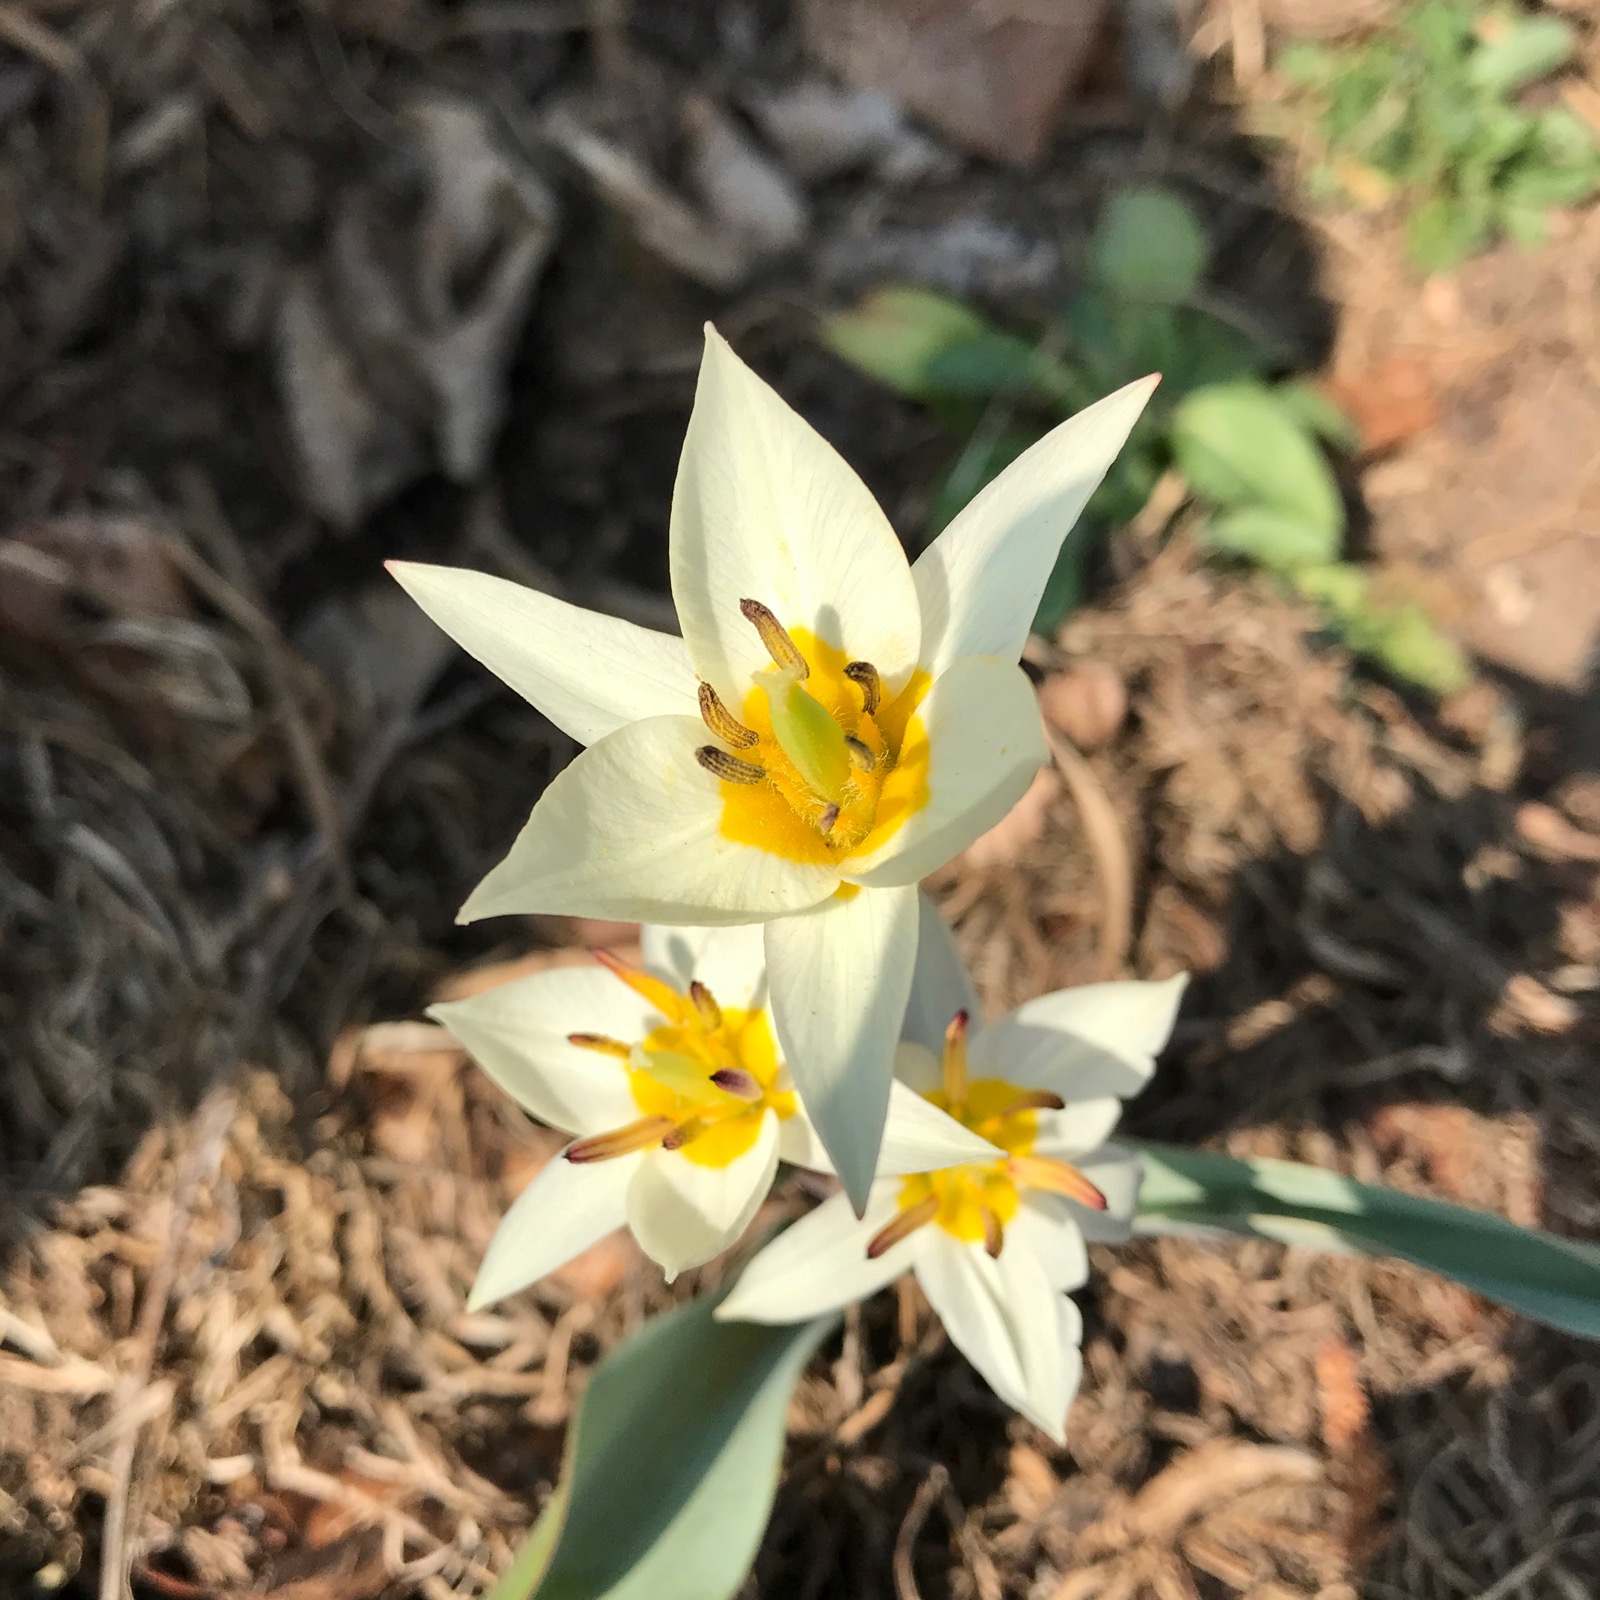 Wild tulip flower in my garden